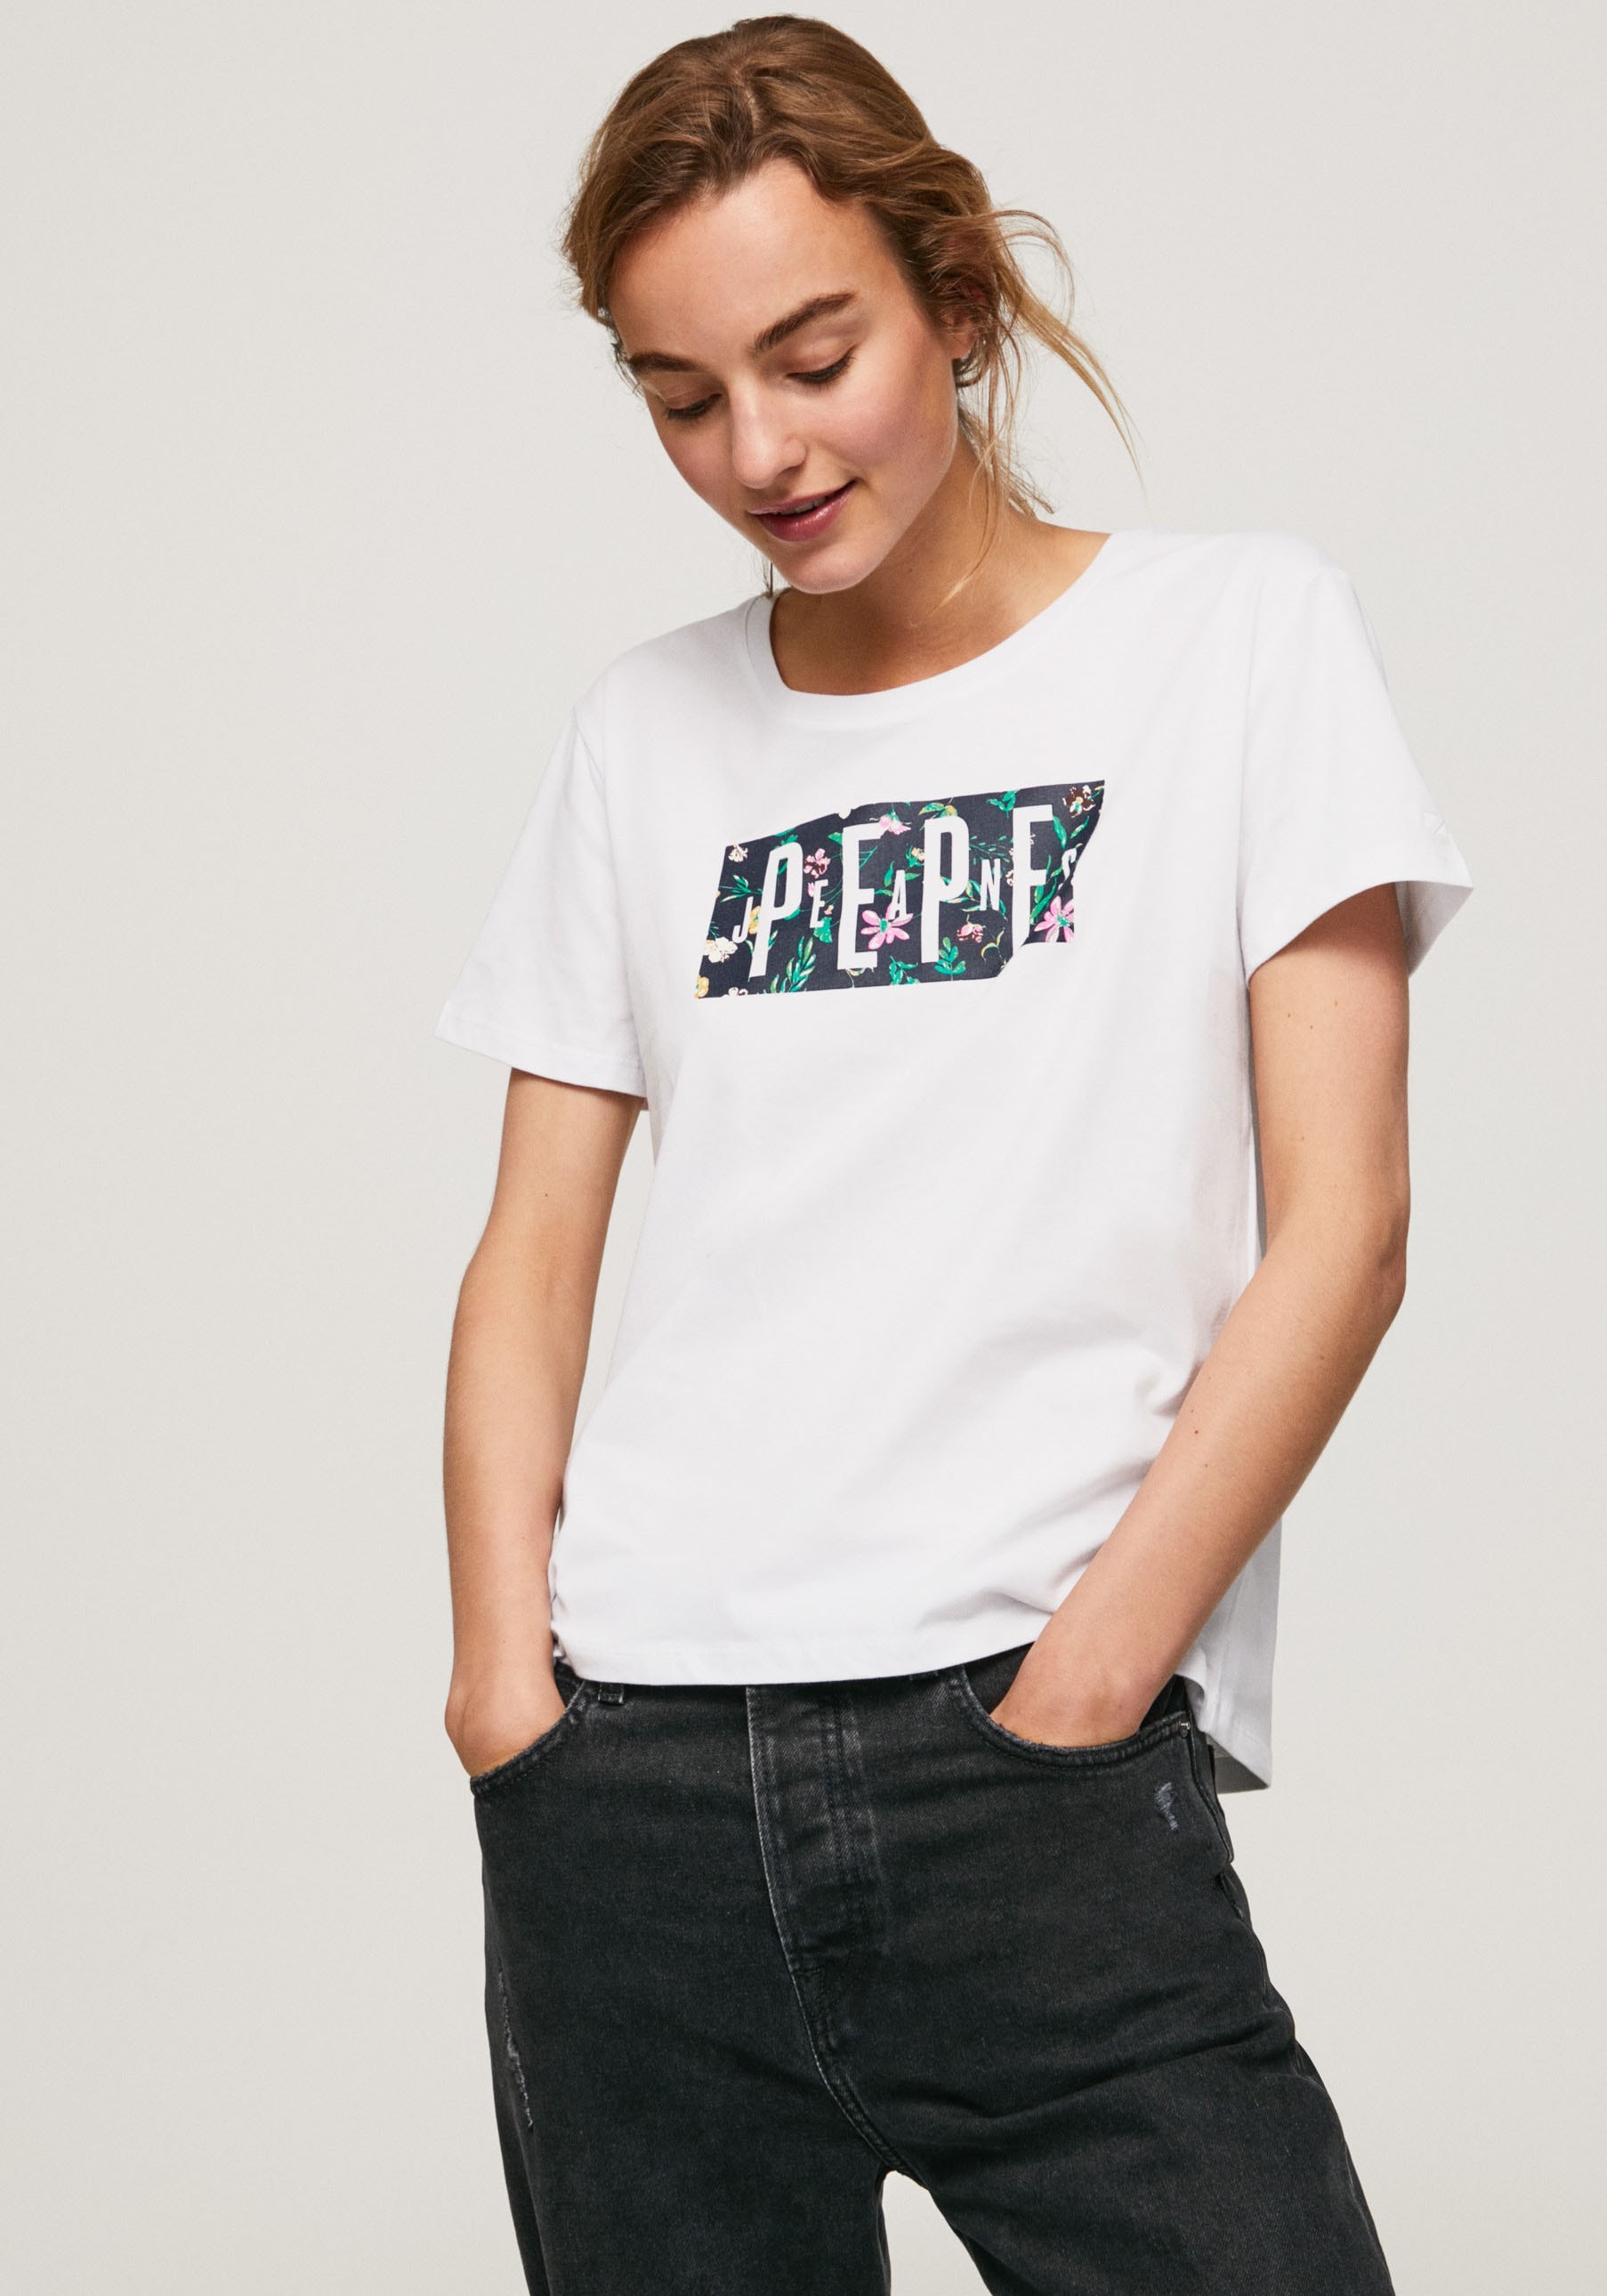 T-Shirt bei Passform figurbetonter ♕ markentypischem Jeans mit Frontprint tollem »PATSY«, in und Pepe